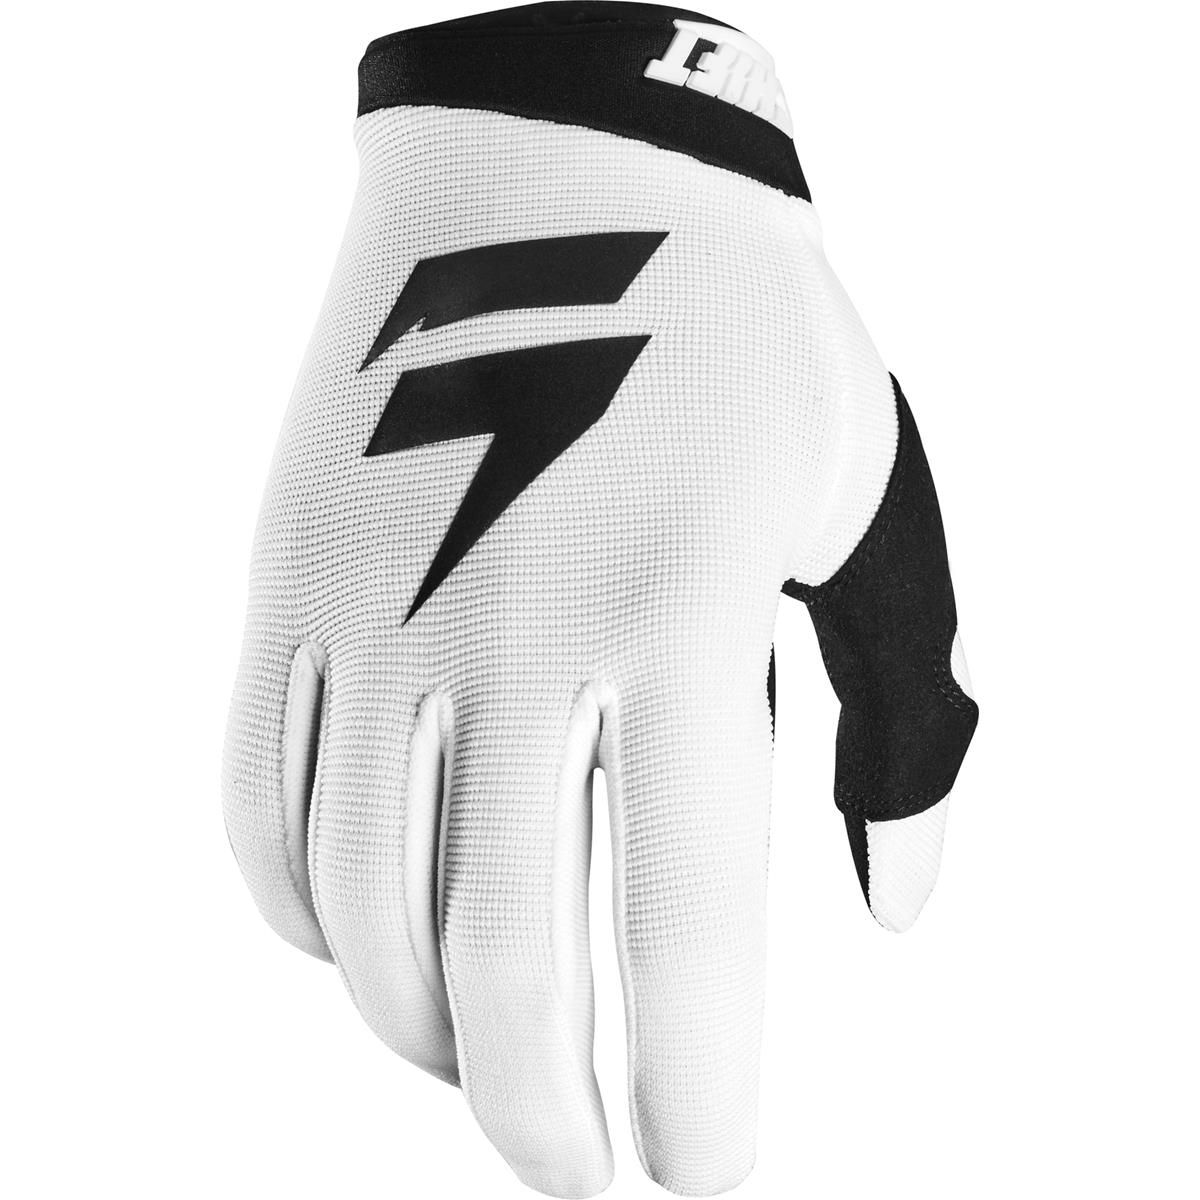 Shift Gloves Whit3 Label Air White/Black